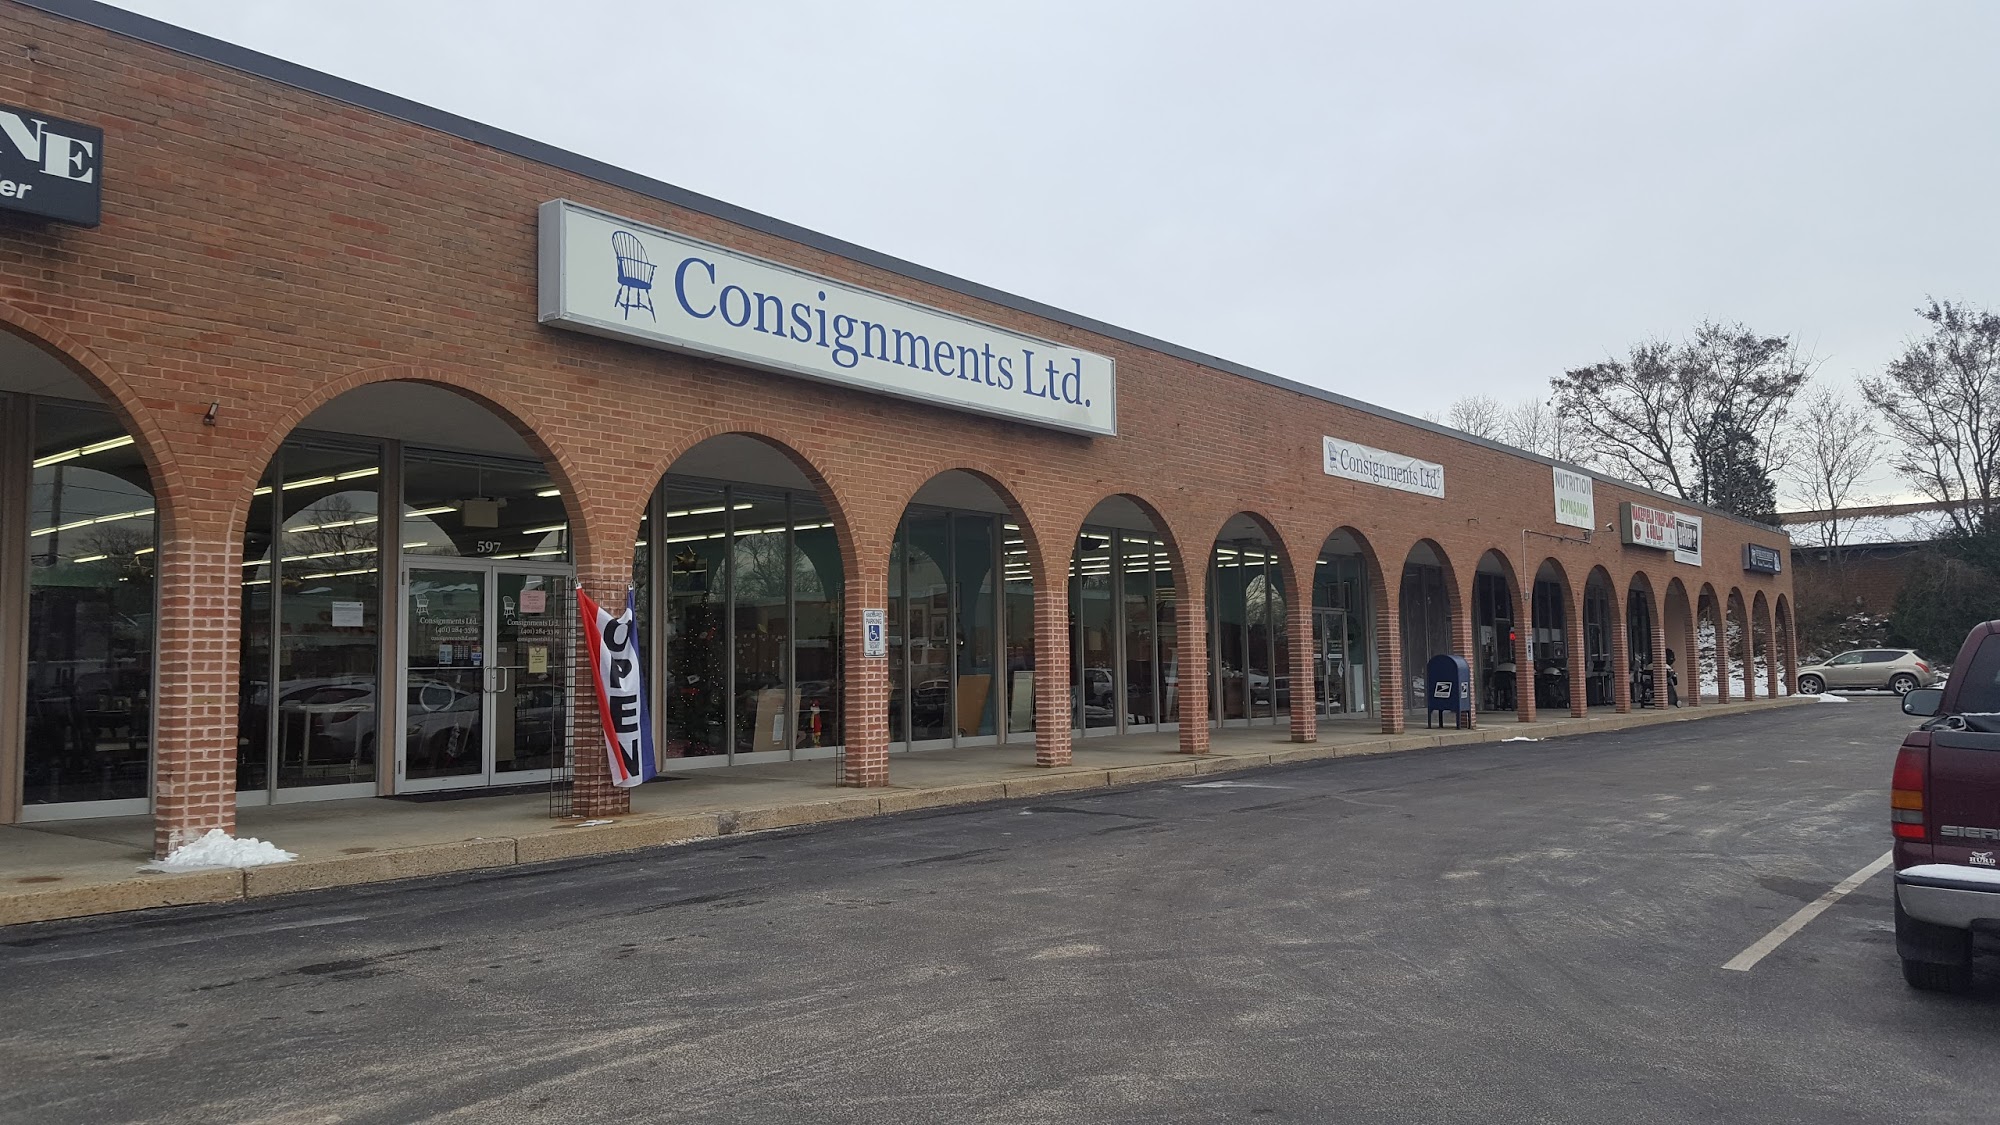 Consignments Ltd